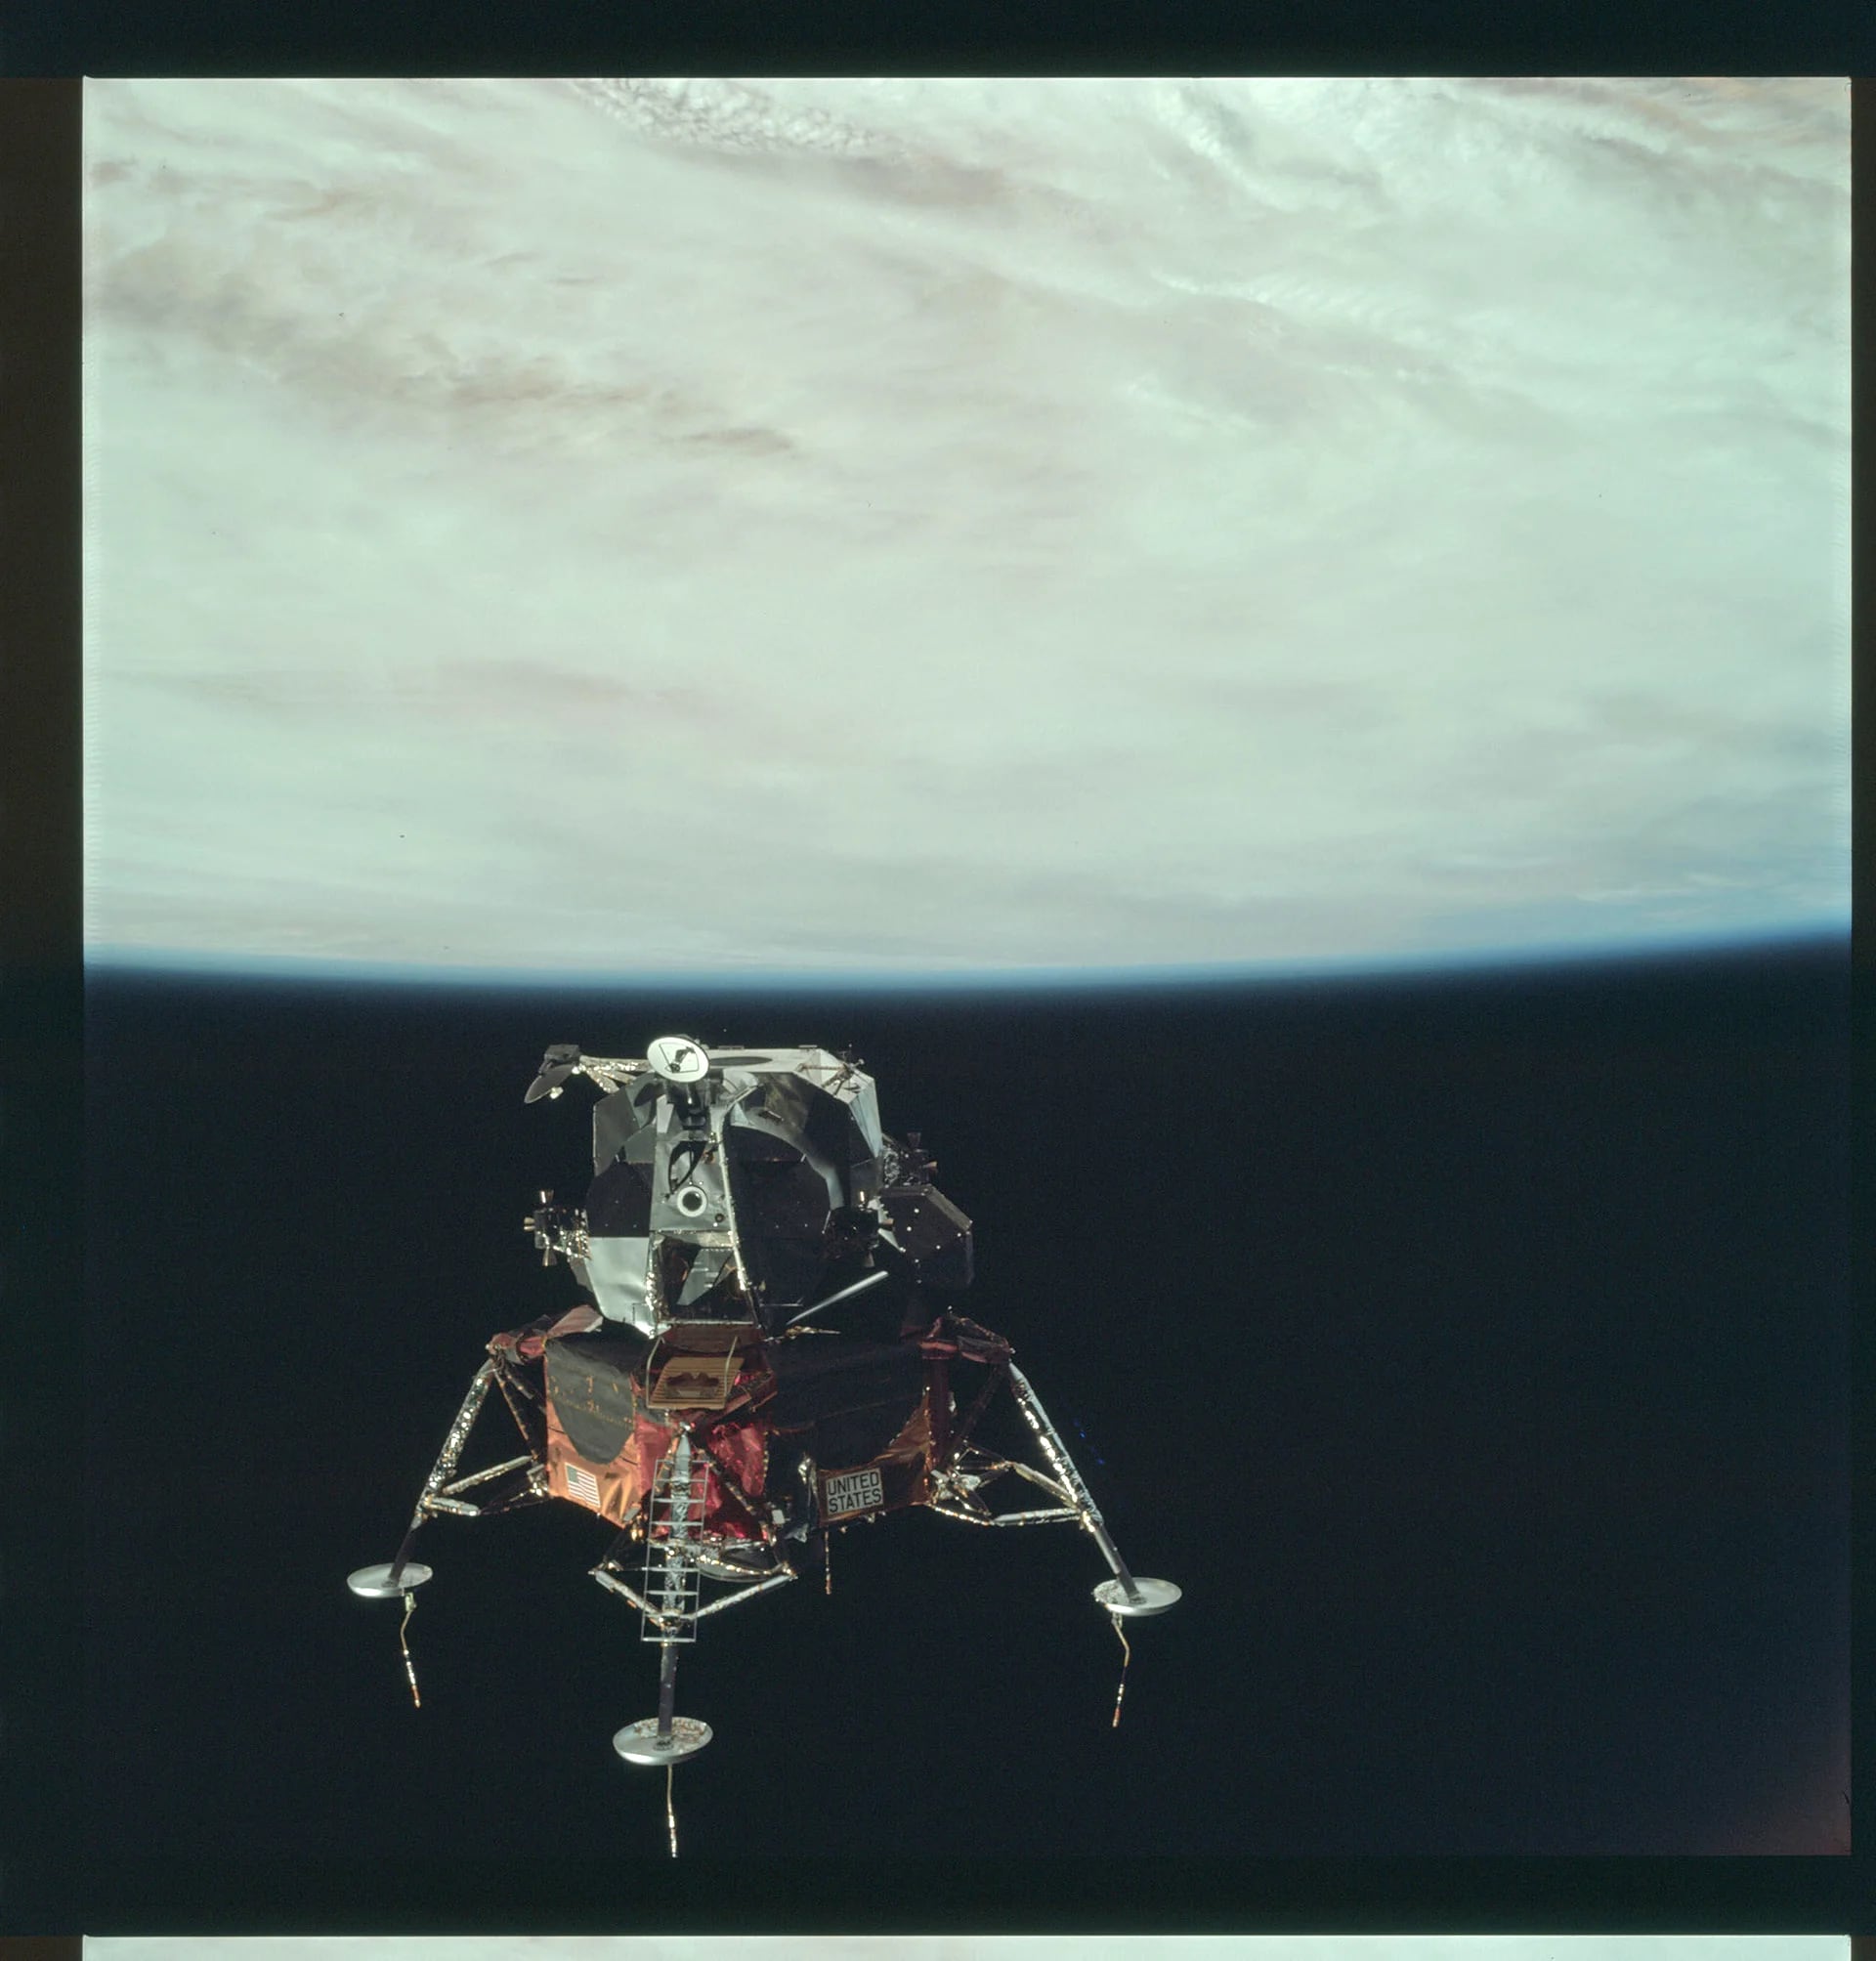 El módulo lunar del Apolo 9 (LM), “Spider”, en el quinto día de la misión Apolo 9, el 7 de marzo de, 1969 (Reuters)